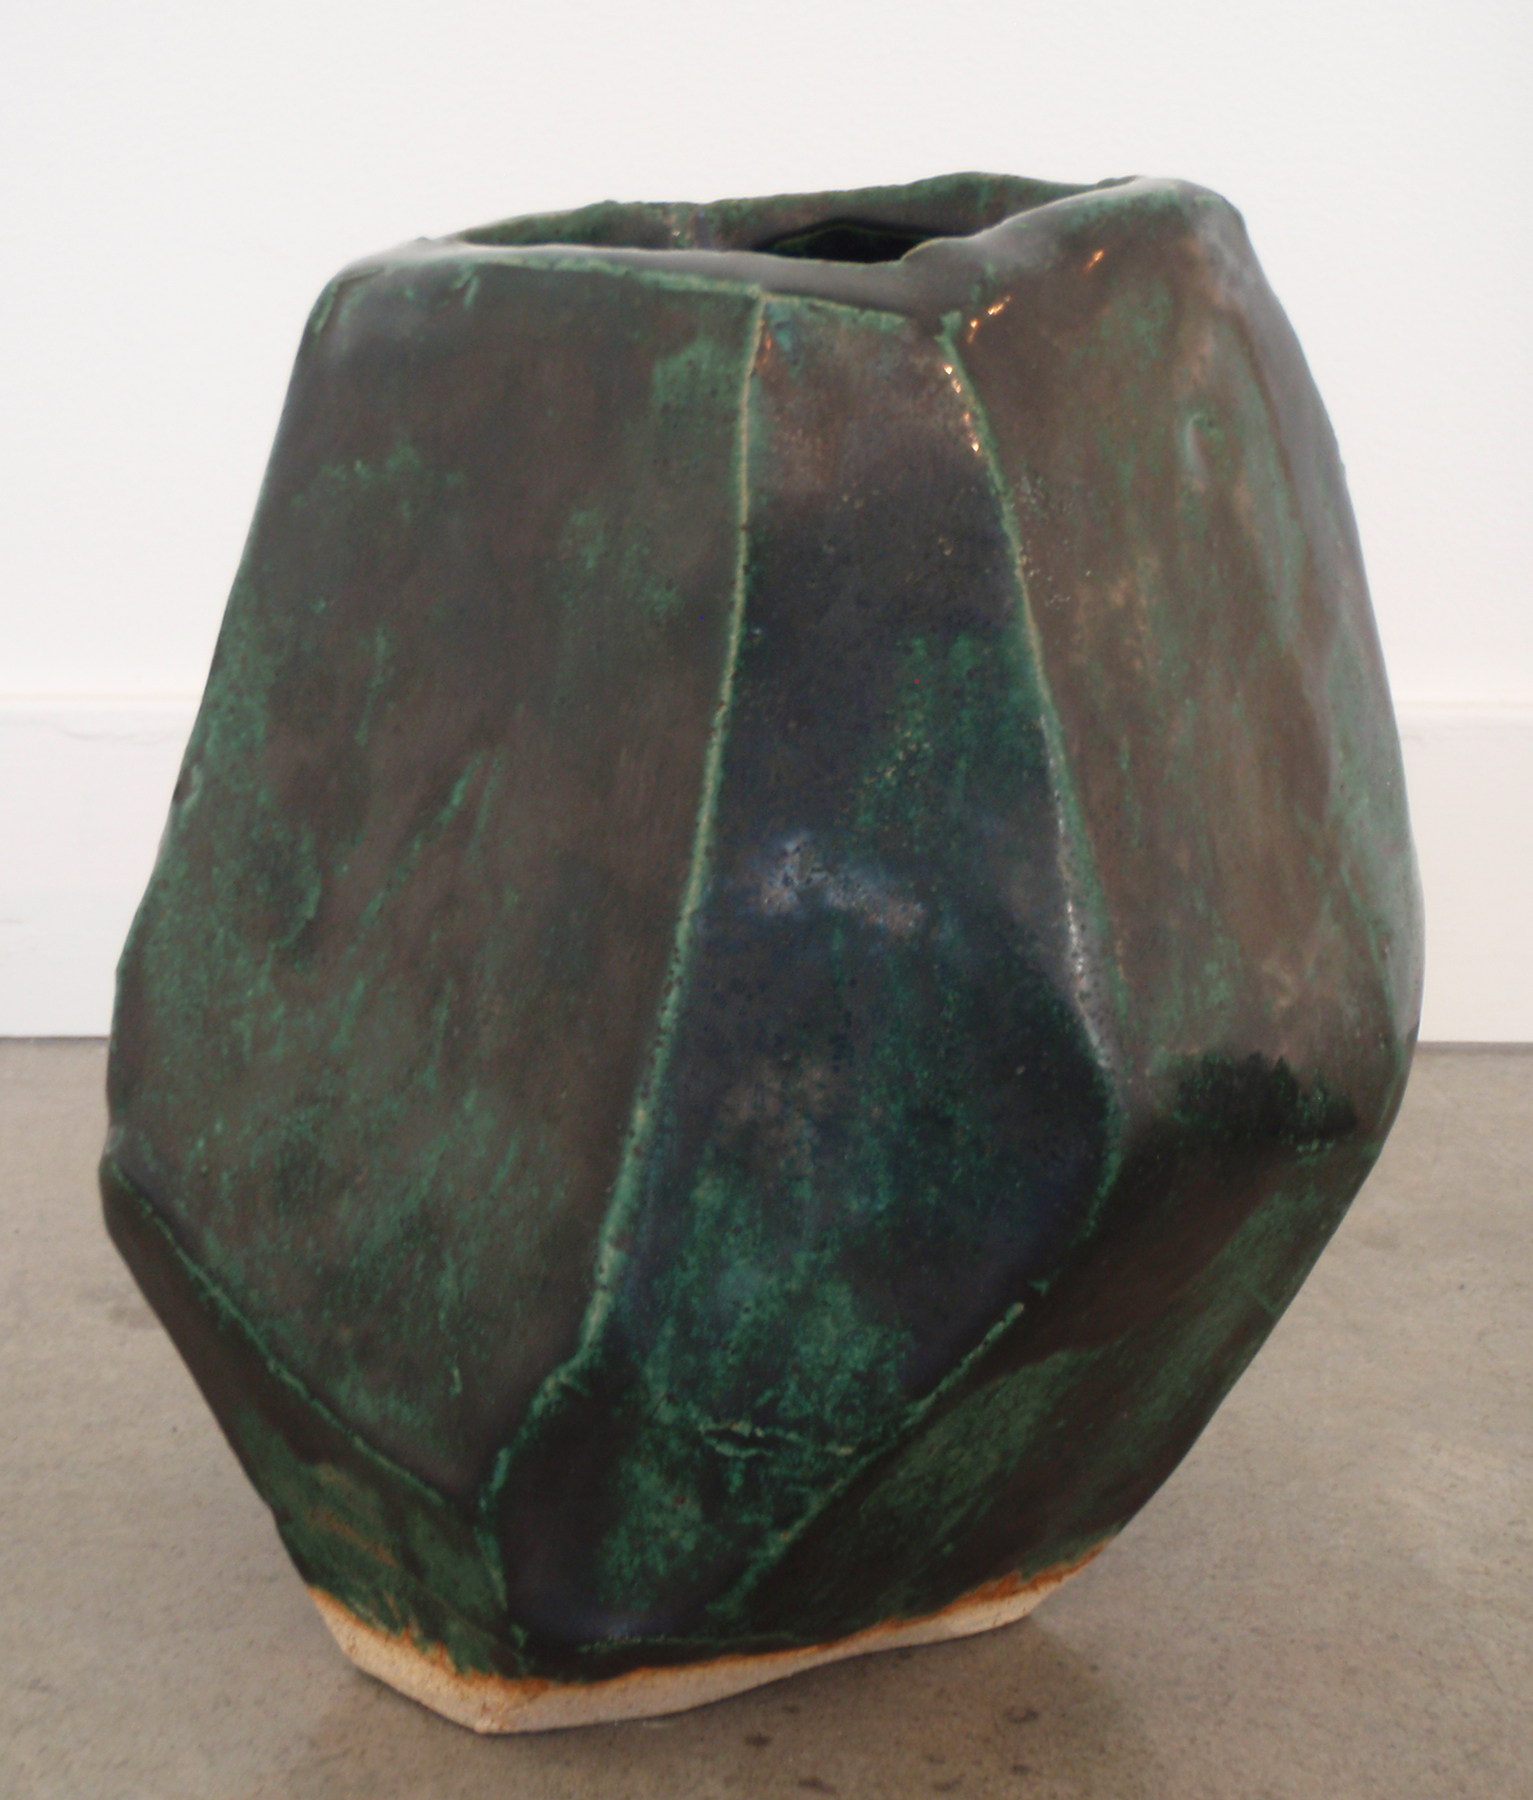   ANNA SEW HOY   verte/noir , fired stoneware, 8" x 7.5" x 6.5", 2012 